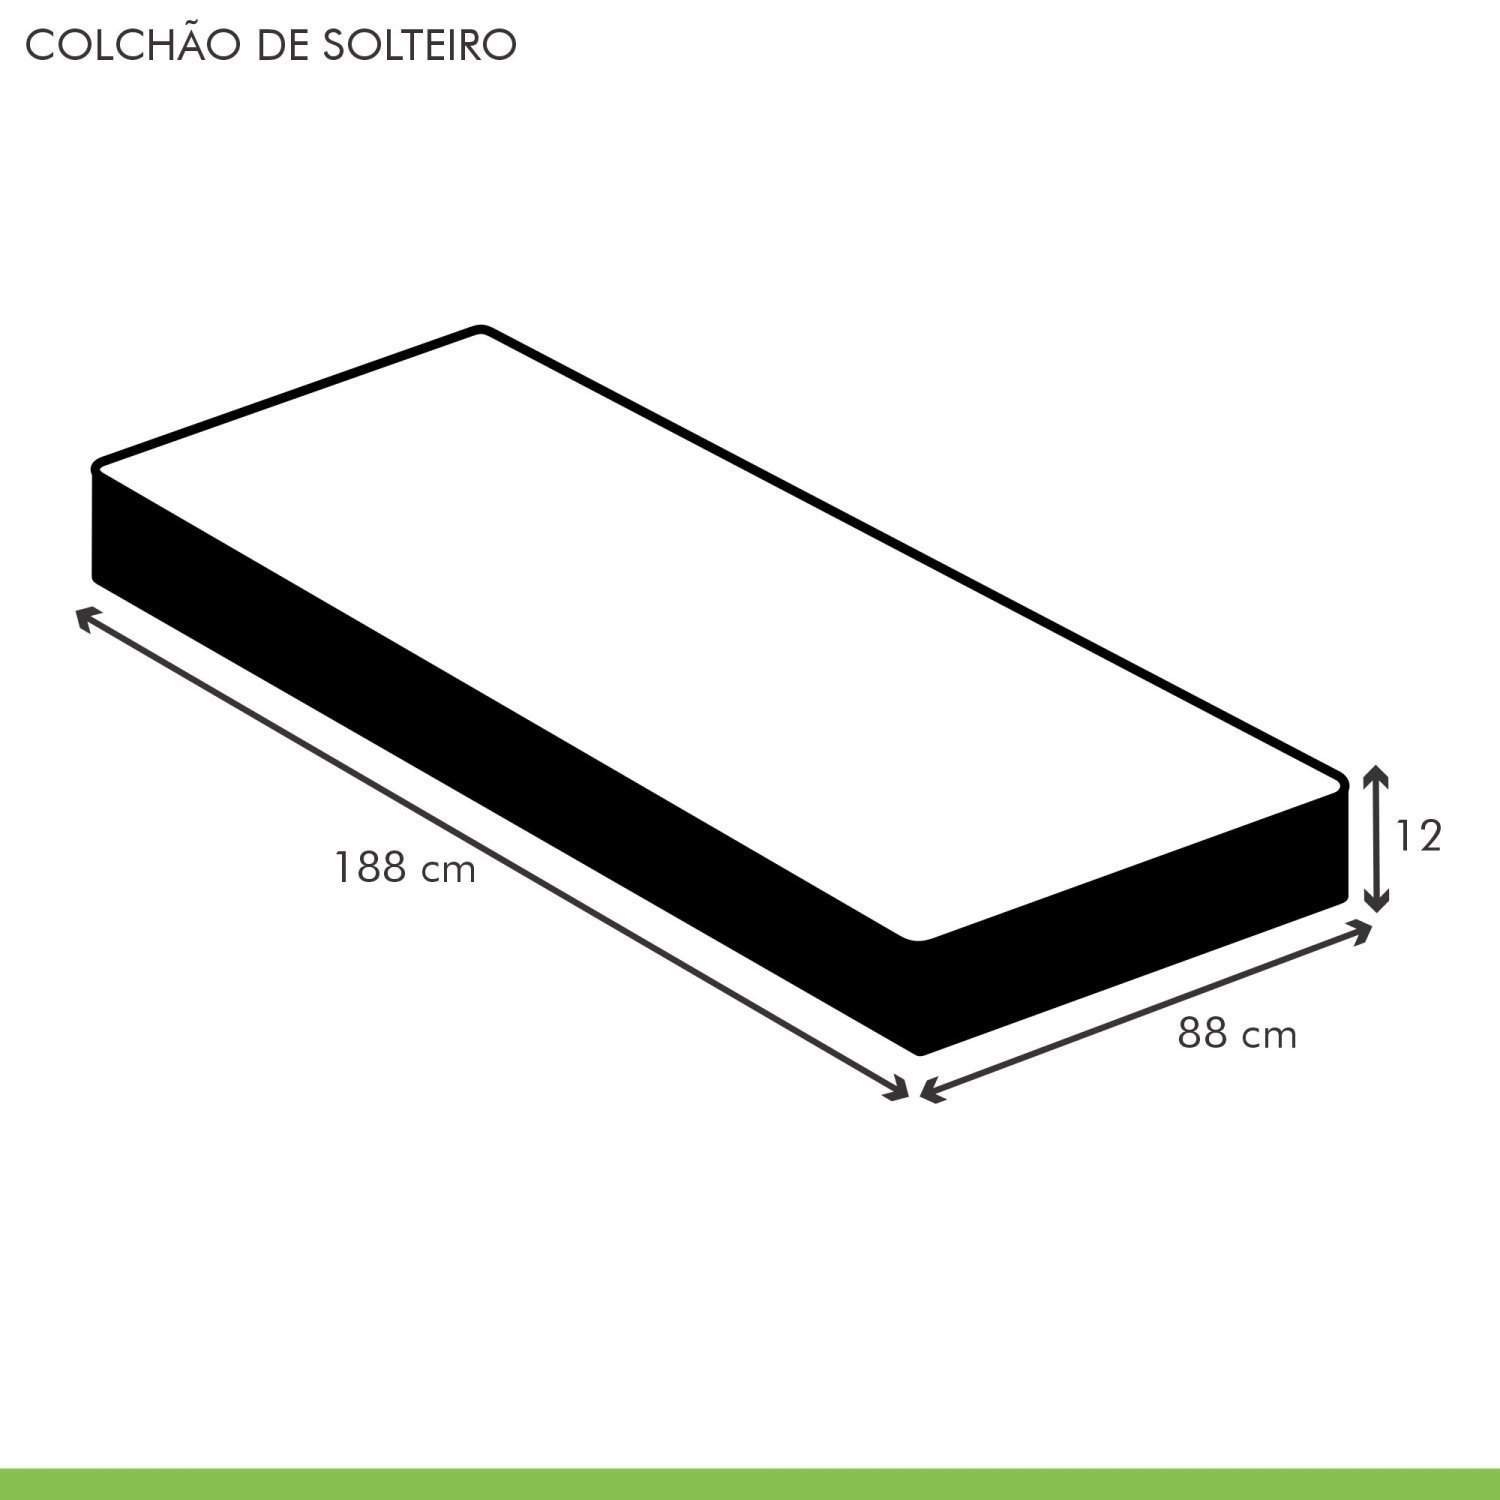 Colchão Solteiro Unique D20 Duoface 12x88x188cm  - 5